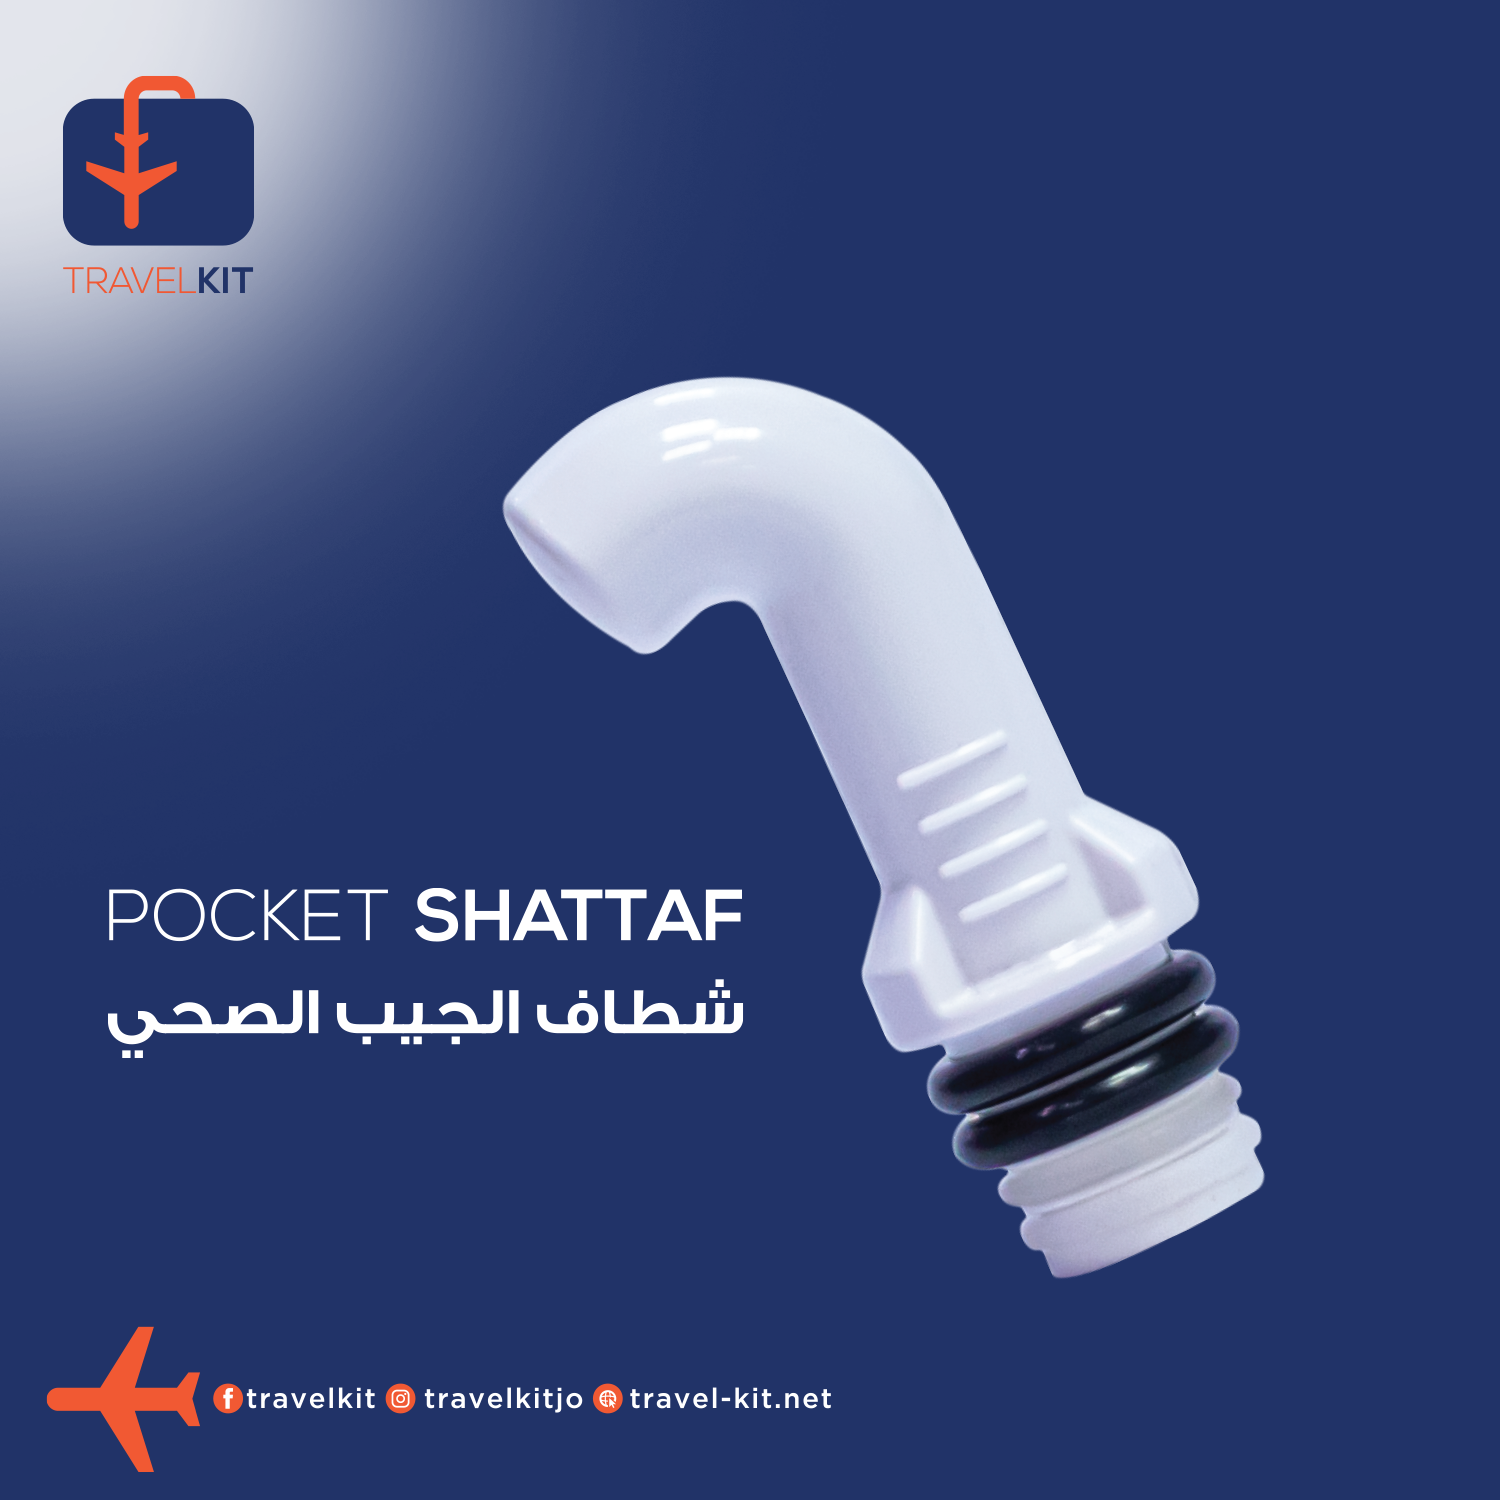 Pocket Shattaf / Bidet